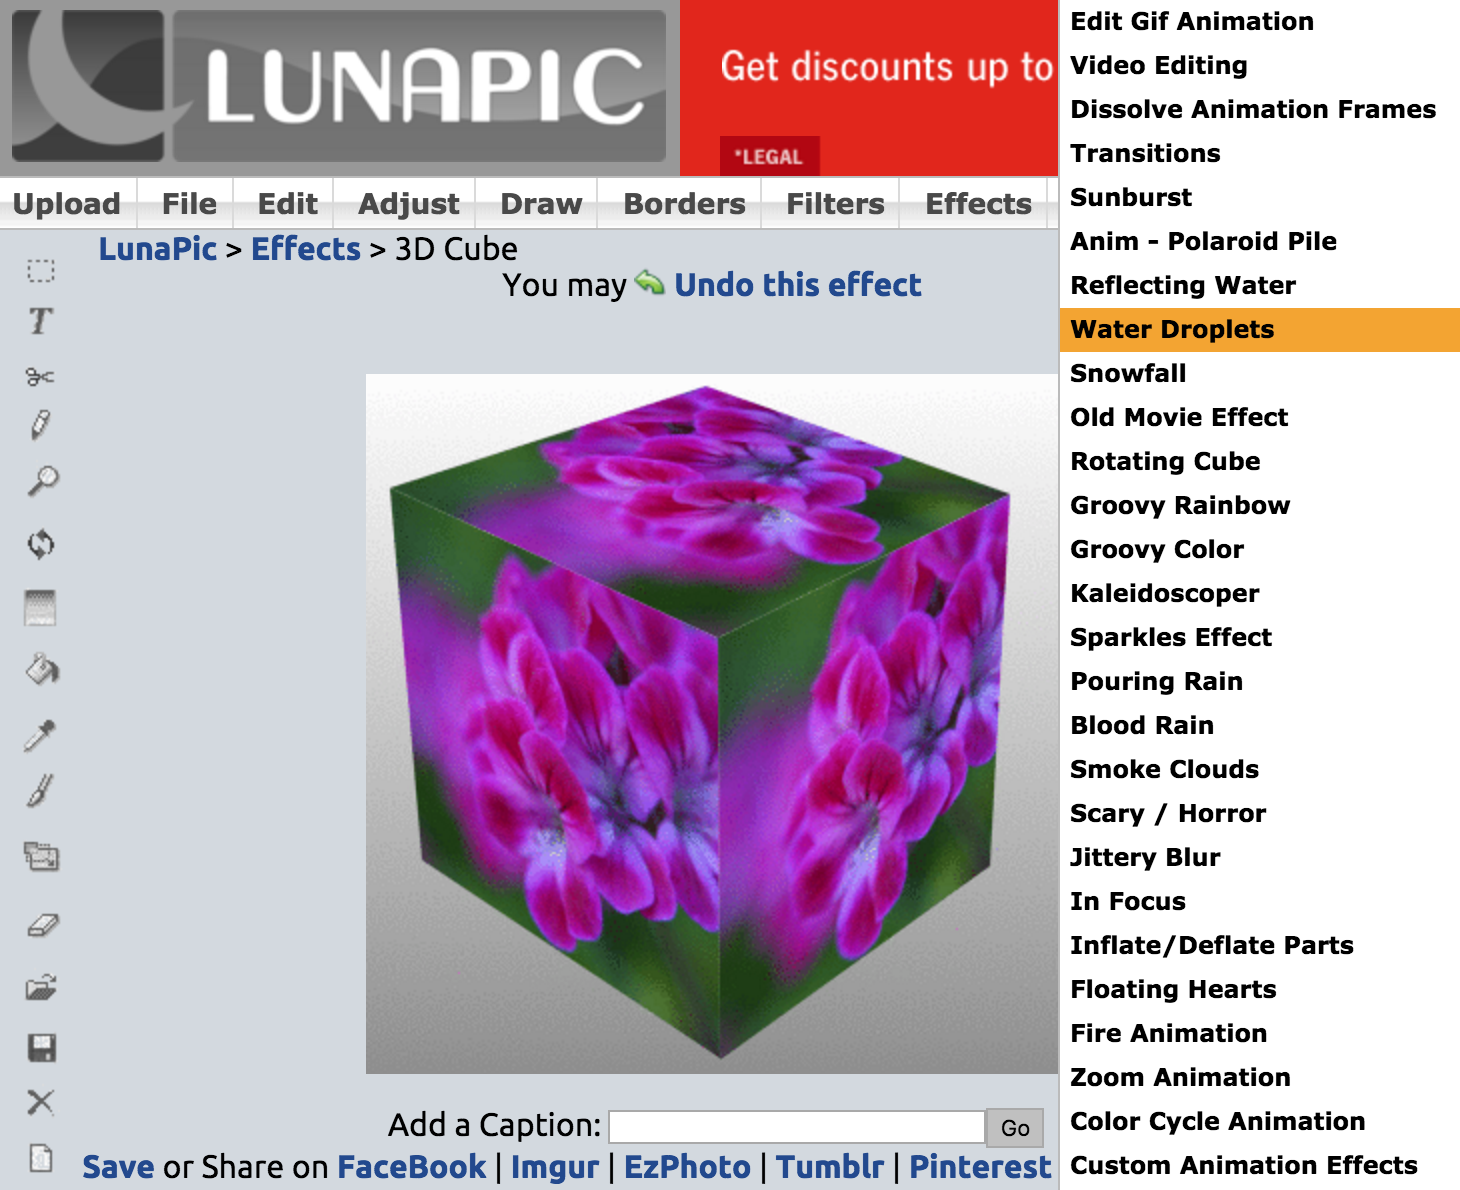 Lunapic